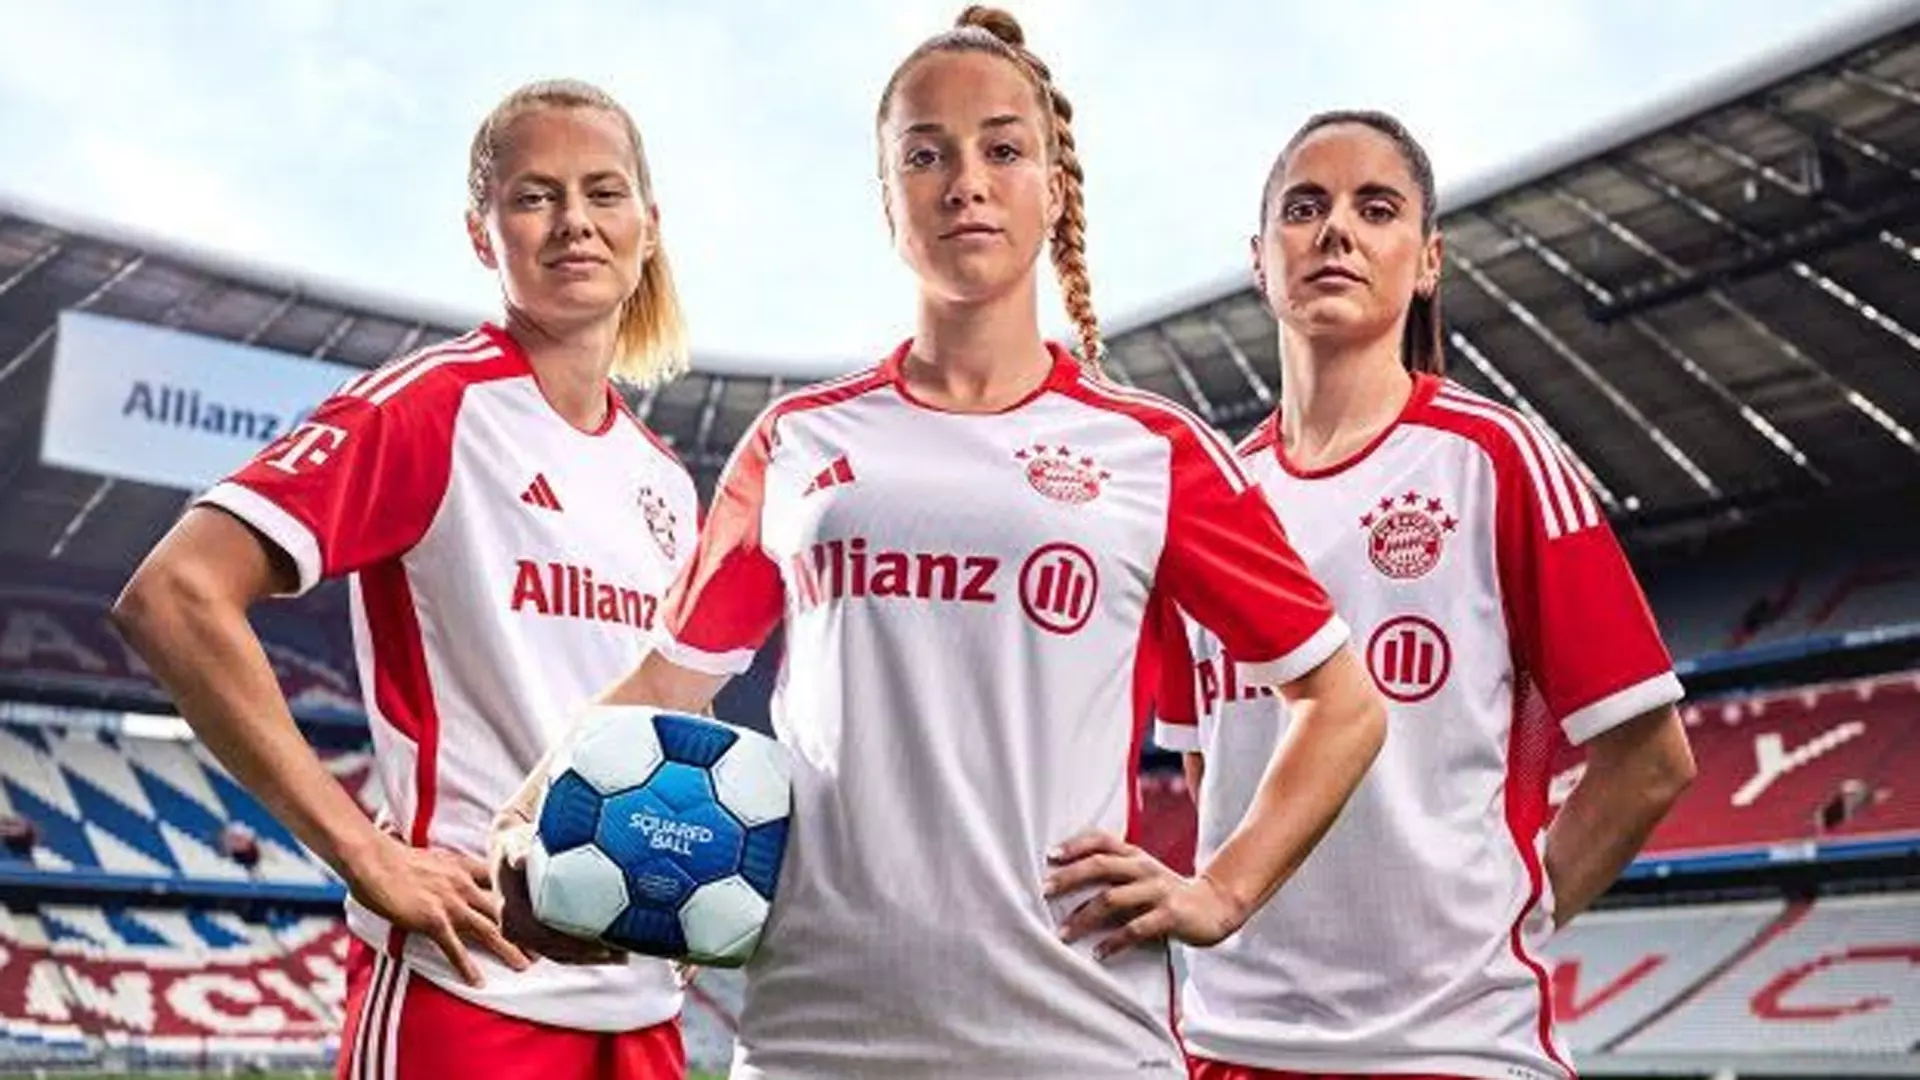 Allianz lancia due iniziative per le donne che giocano a calcio